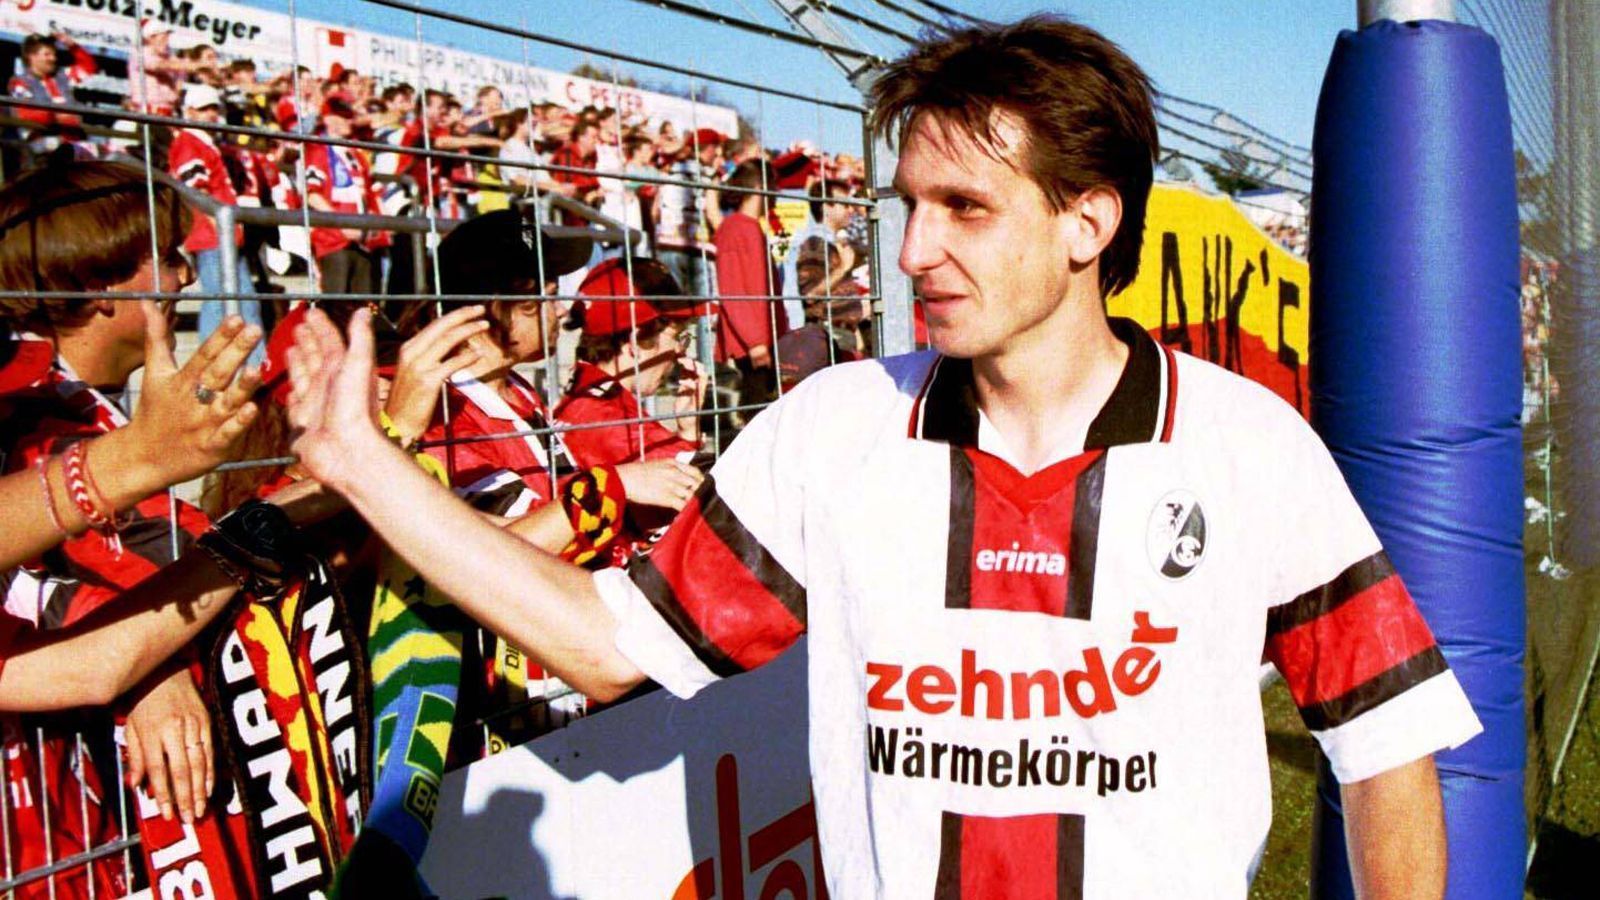 
                <strong>Abwehr: Stefan Müller</strong><br>
                Stefan Müller spielte in seiner Karriere nur für den SC Freiburg. In zwölf Jahren absolvierte der Abwehrspieler 151 Bundesligaspiele. In der deutschen U21-Mannschaft kam er fünfmal zum Einsatz, ein Länderspiel in der A-Nationalmannschaft blieb ihm verwehrt. Der 46-Jährige lebt heute in Freiburg und ist Tierarzt. 
              